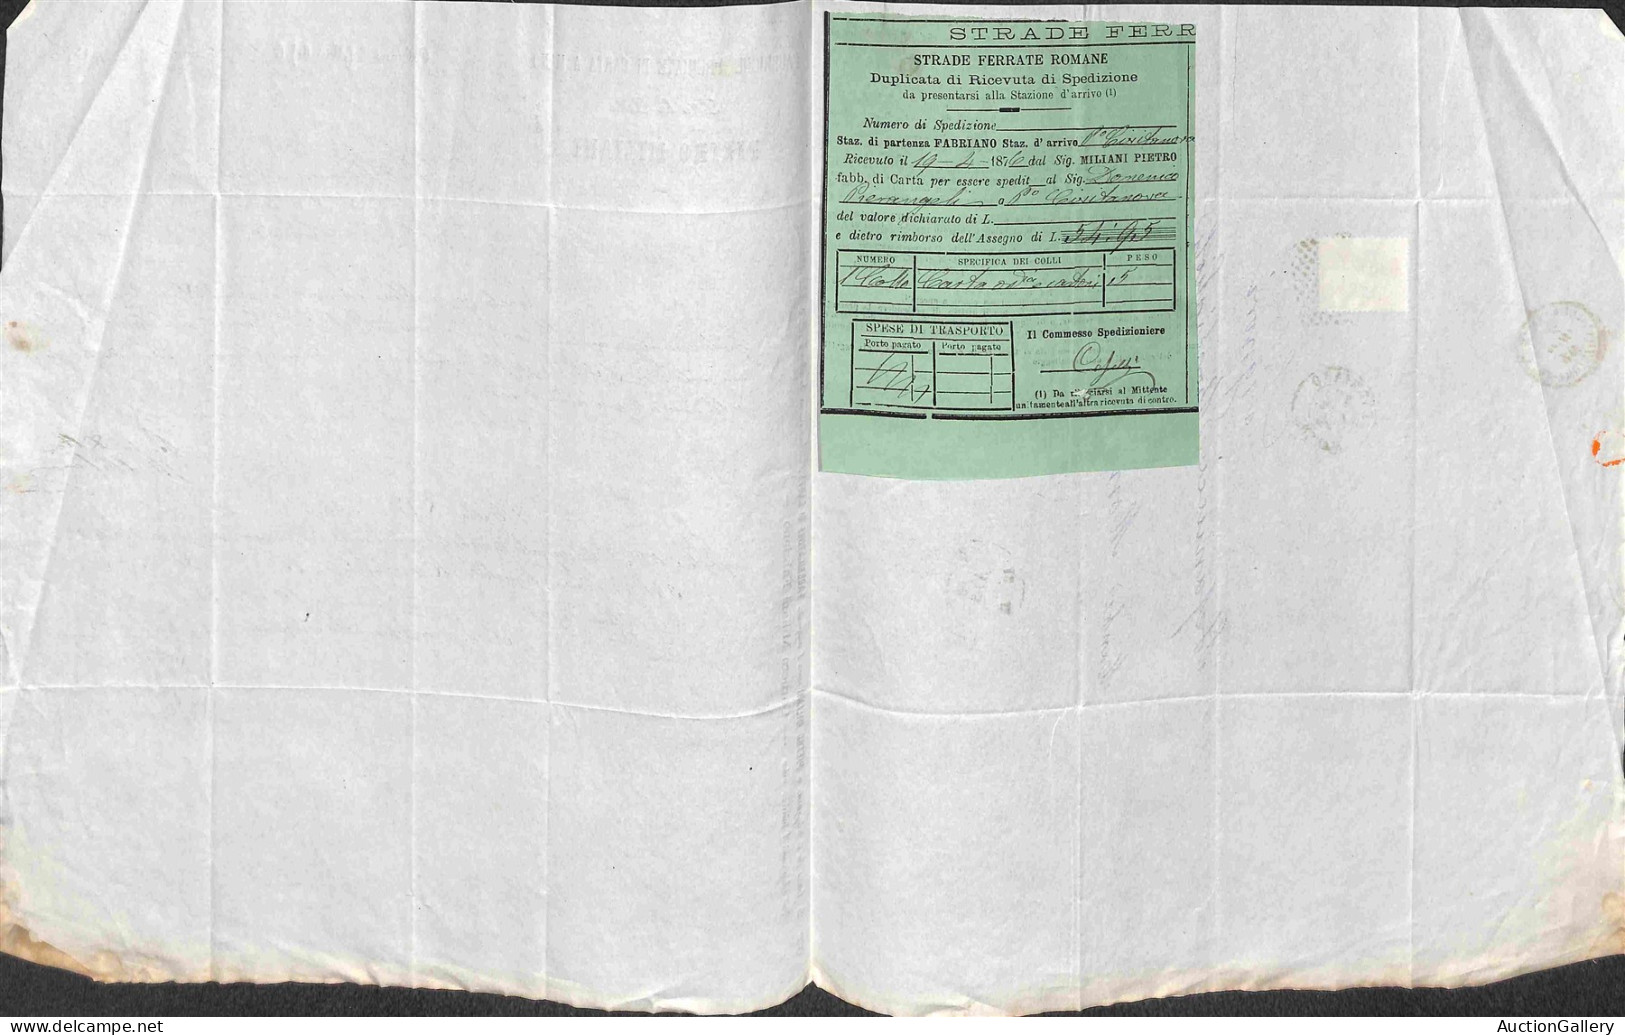 Documenti e Varie - 1876/1878 - Miliani Fabriano - 4 fatture con 5 ricevute di spedizione e prima di cambio del periodo 